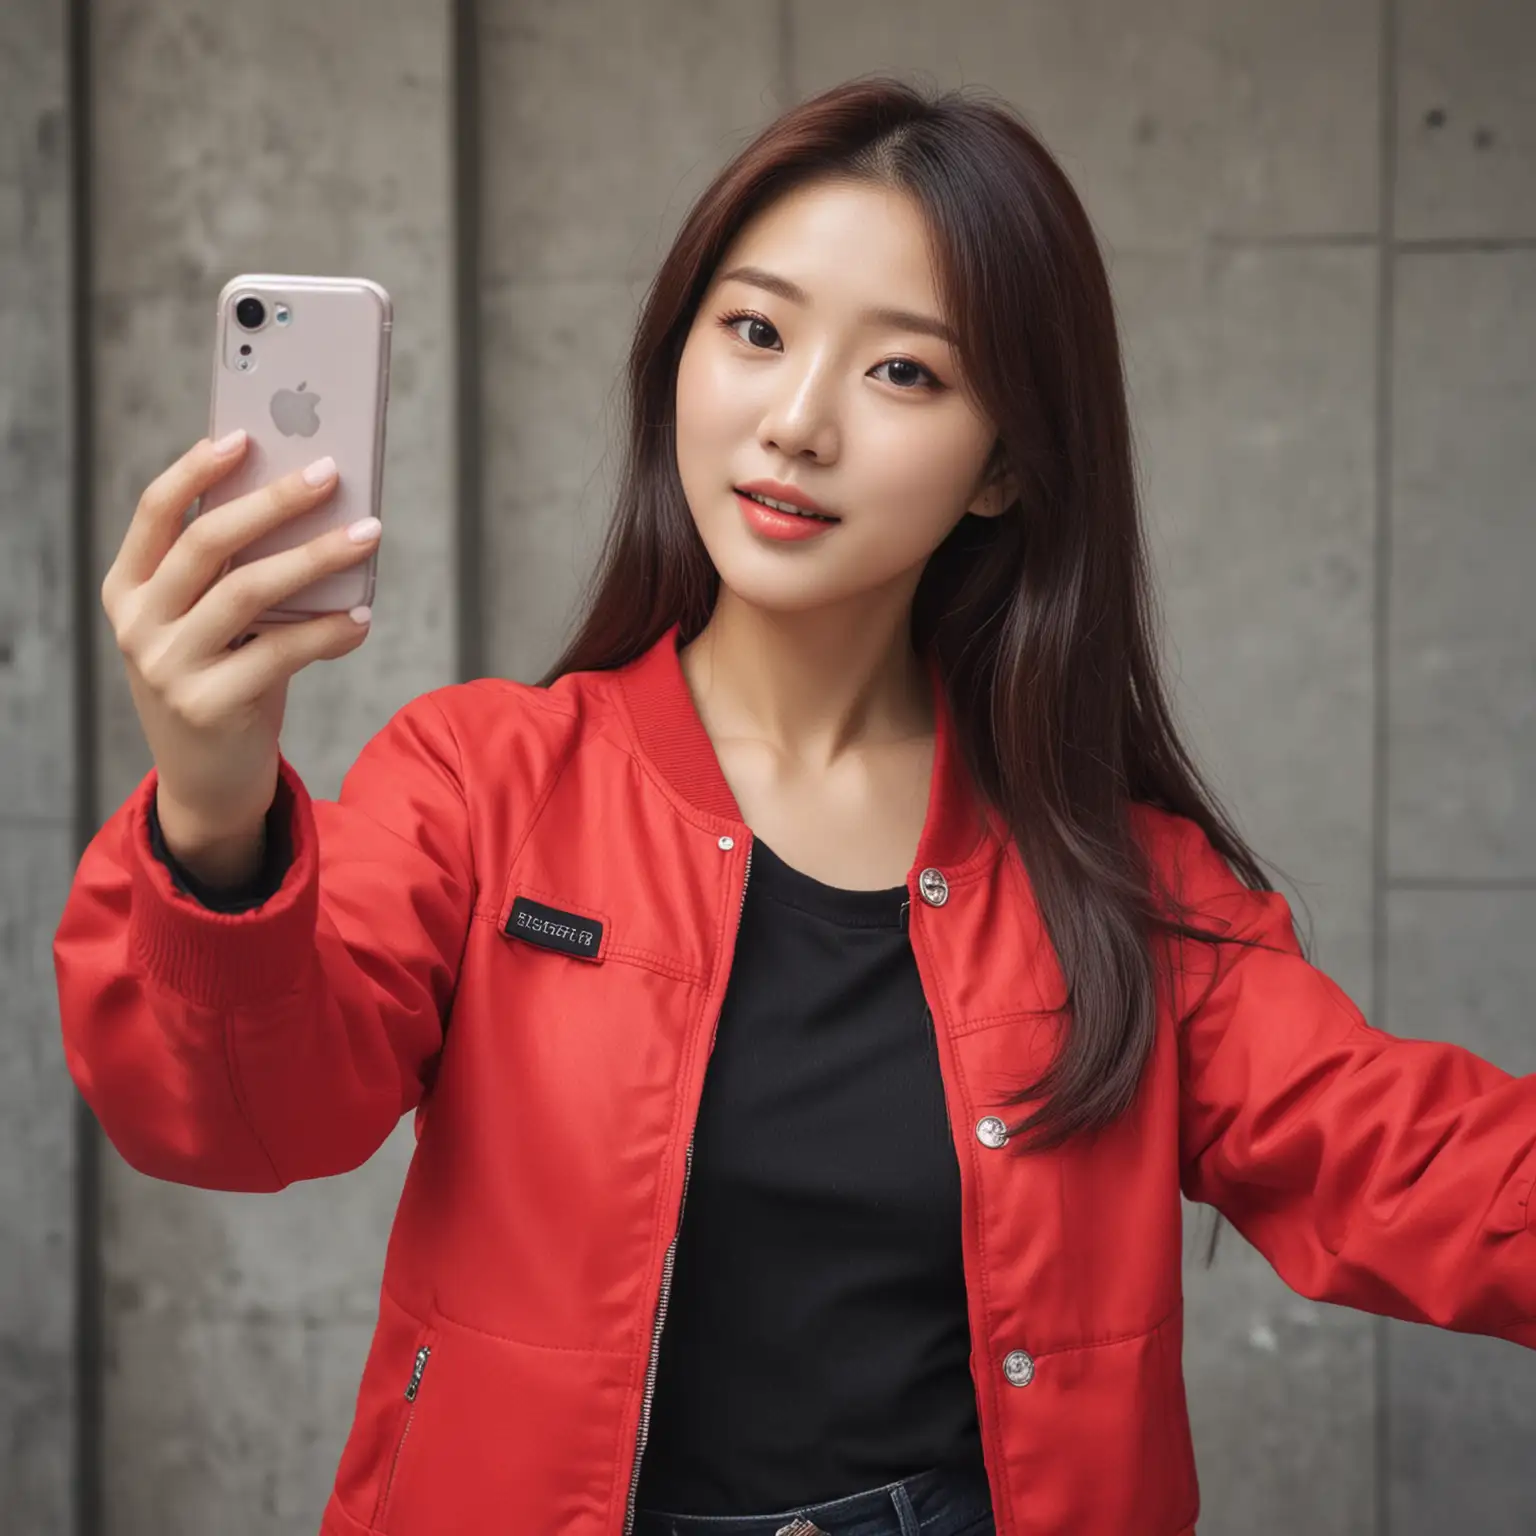 Beautiful Korean Woman Wearing a Red Jacket Taking a Selfie